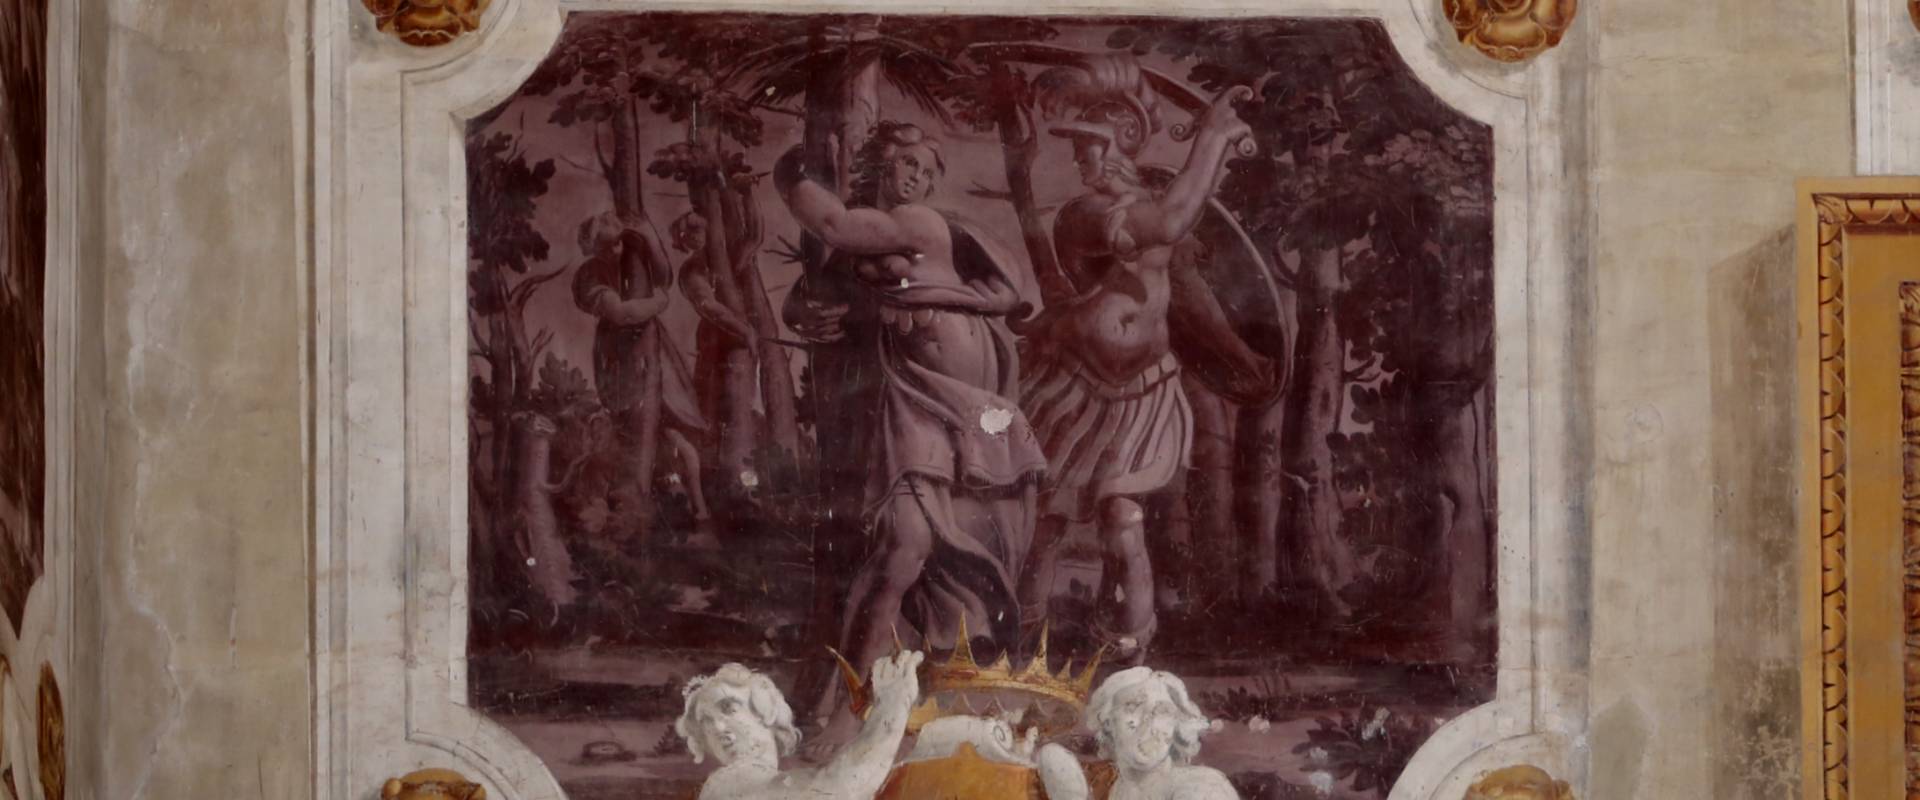 Pier francesco battistelli e aiuti, affreschi con scene dell'orlando furioso e della gerusalemme l. tra telamoni, 1619-28, 11 foto di Sailko